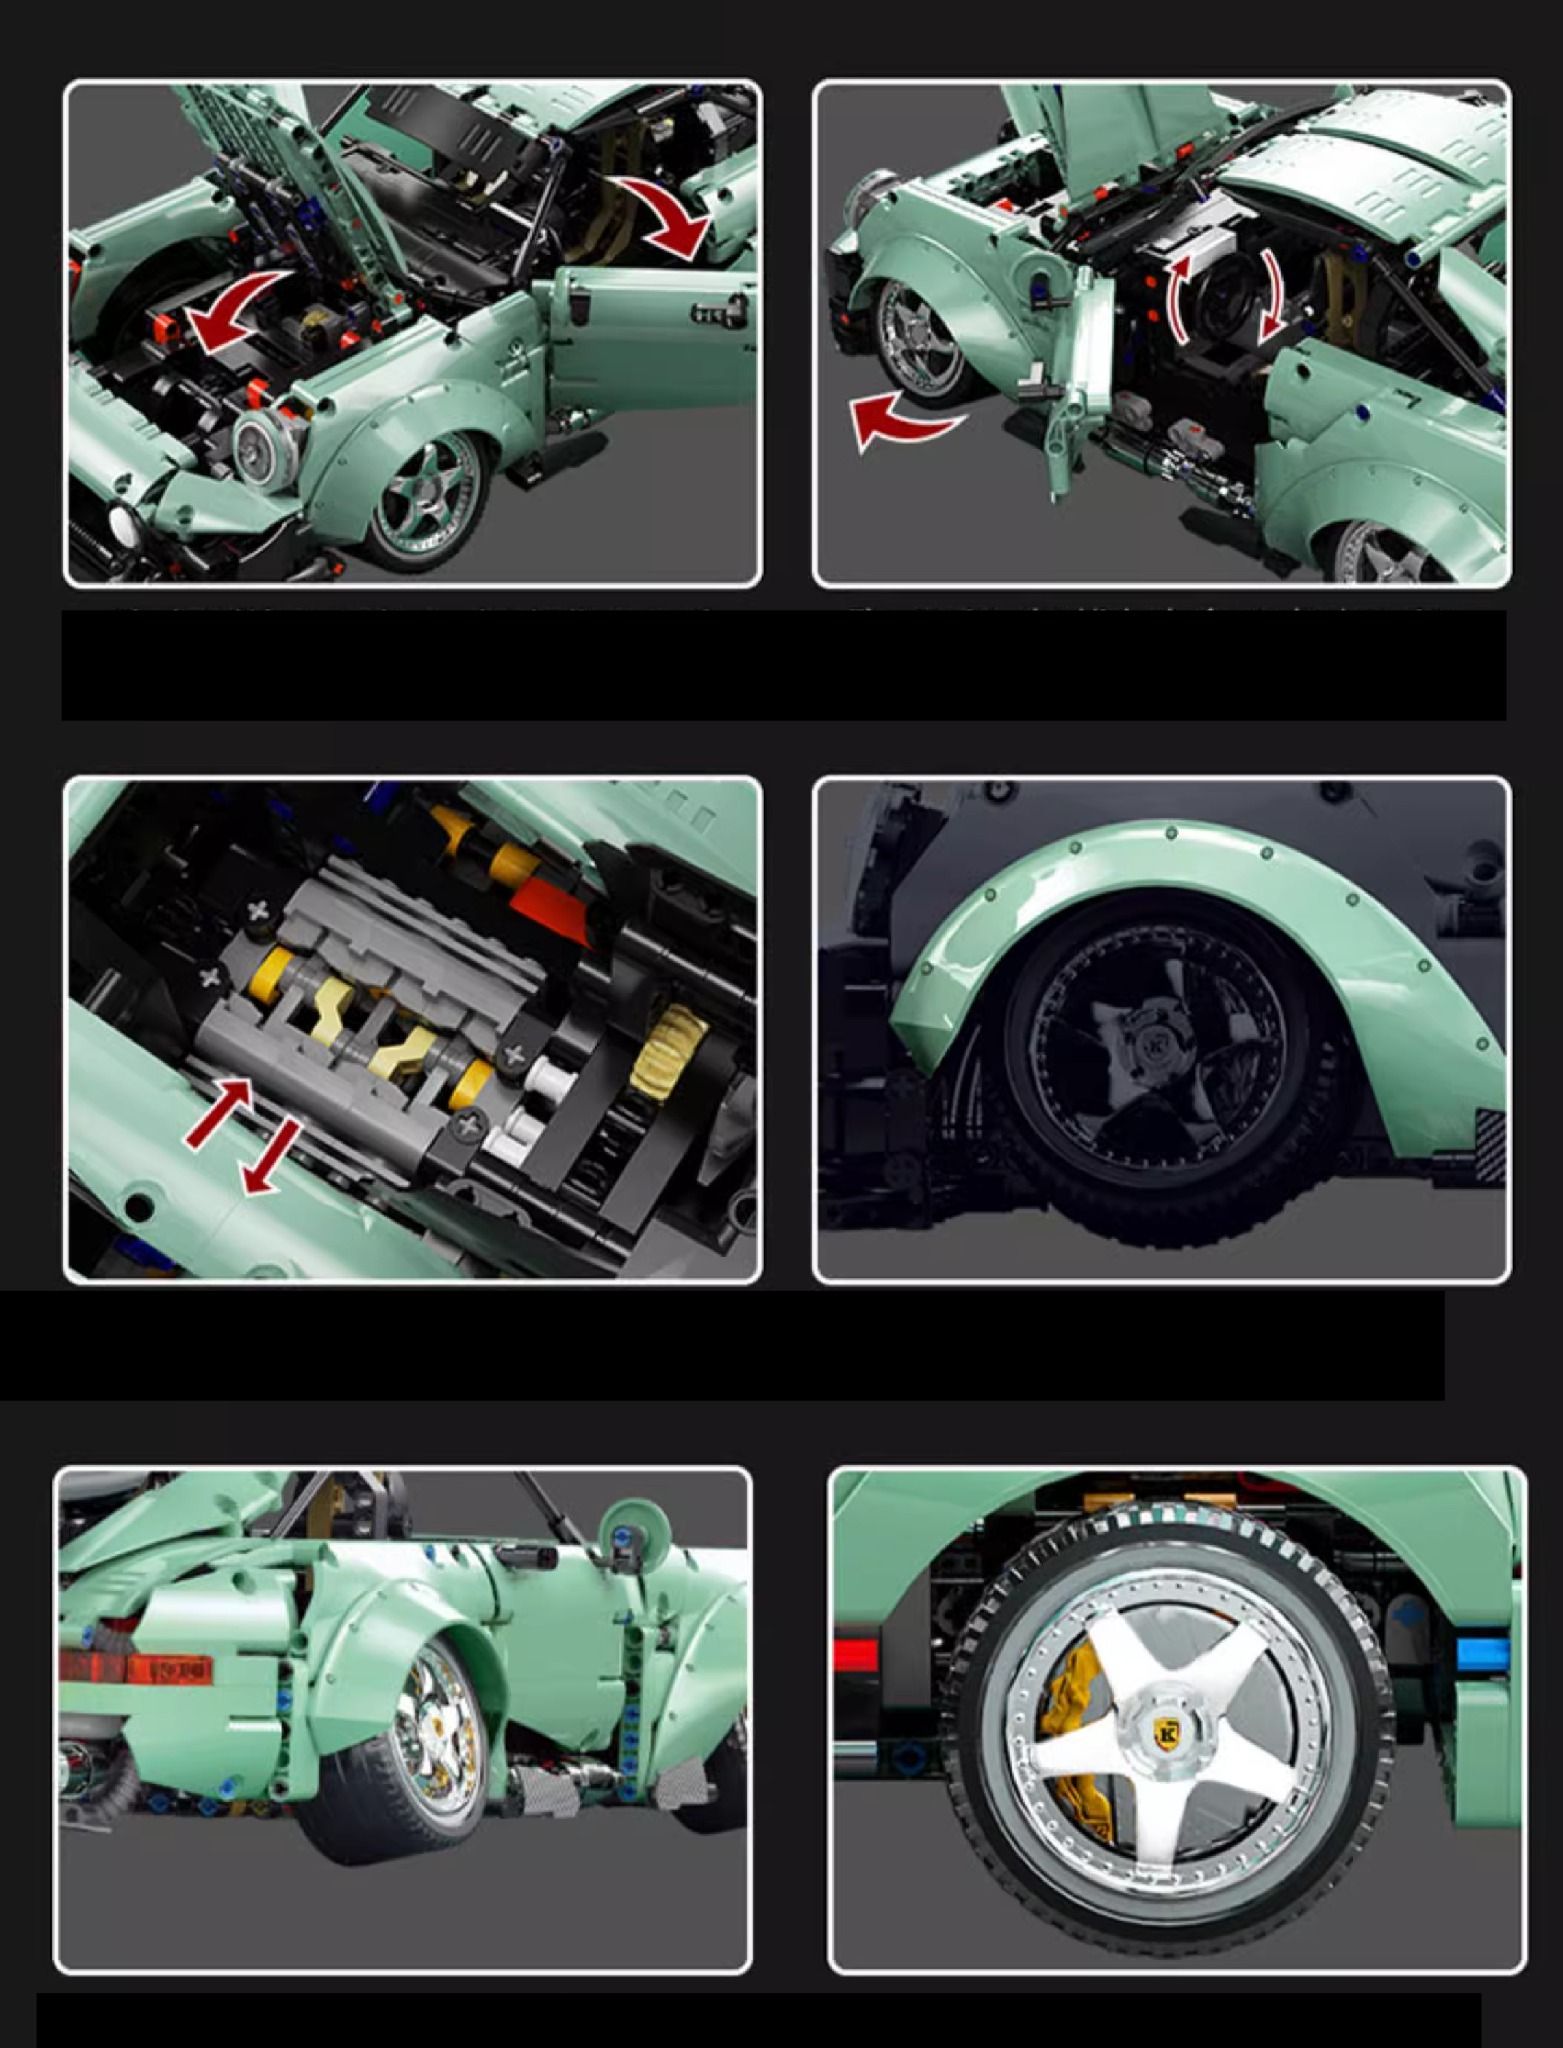  Mô hình xe ô tô lắp ghép Porsche 911 RWB JDM body kit 2435 pcs tỉ lệ 1:10 LG023 